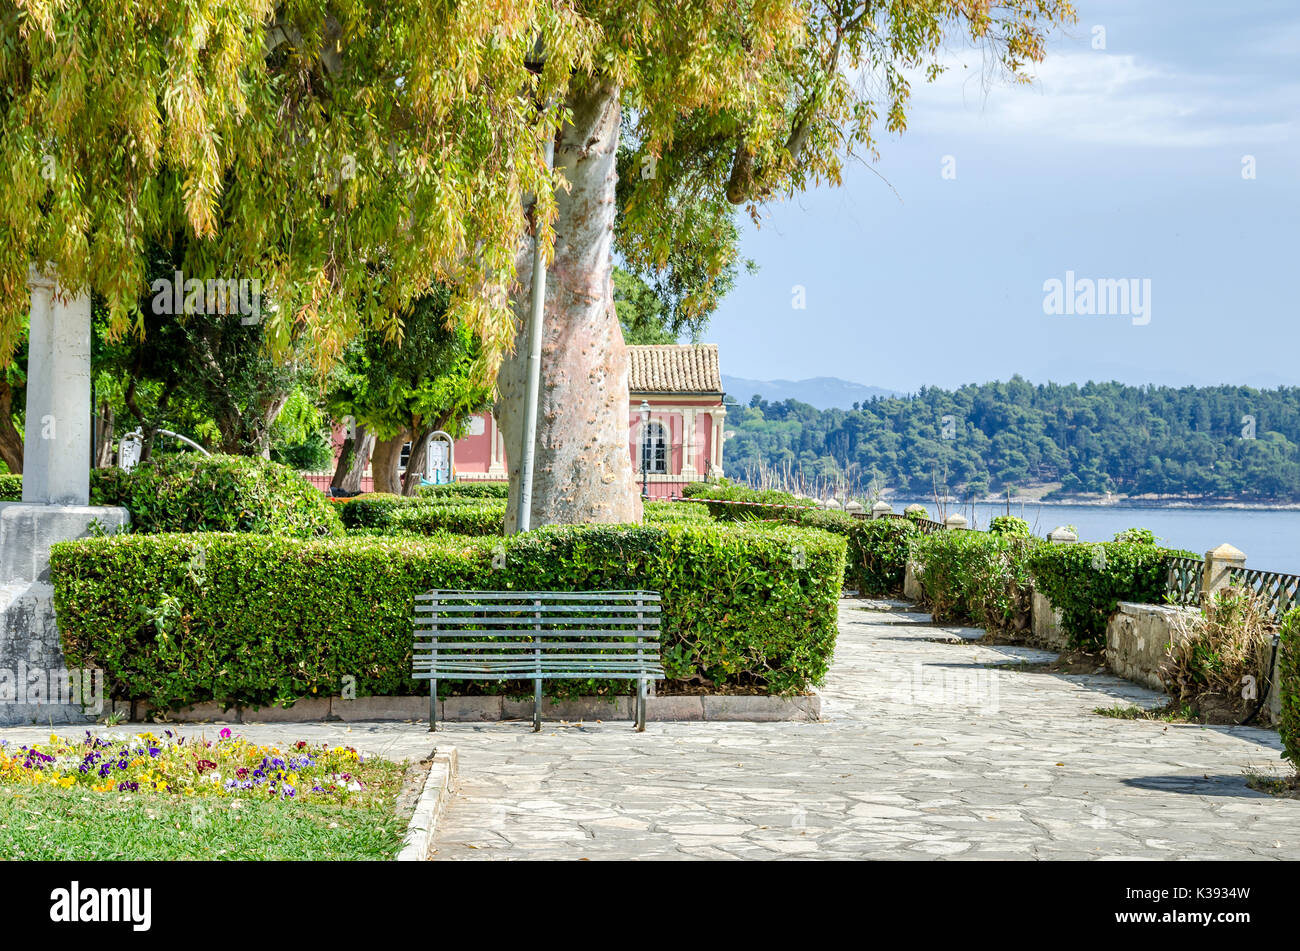 Boschetto Parco o Giardino Boschetto - un giardino pubblico nella città vecchia di Corfù, Grecia. Foto Stock